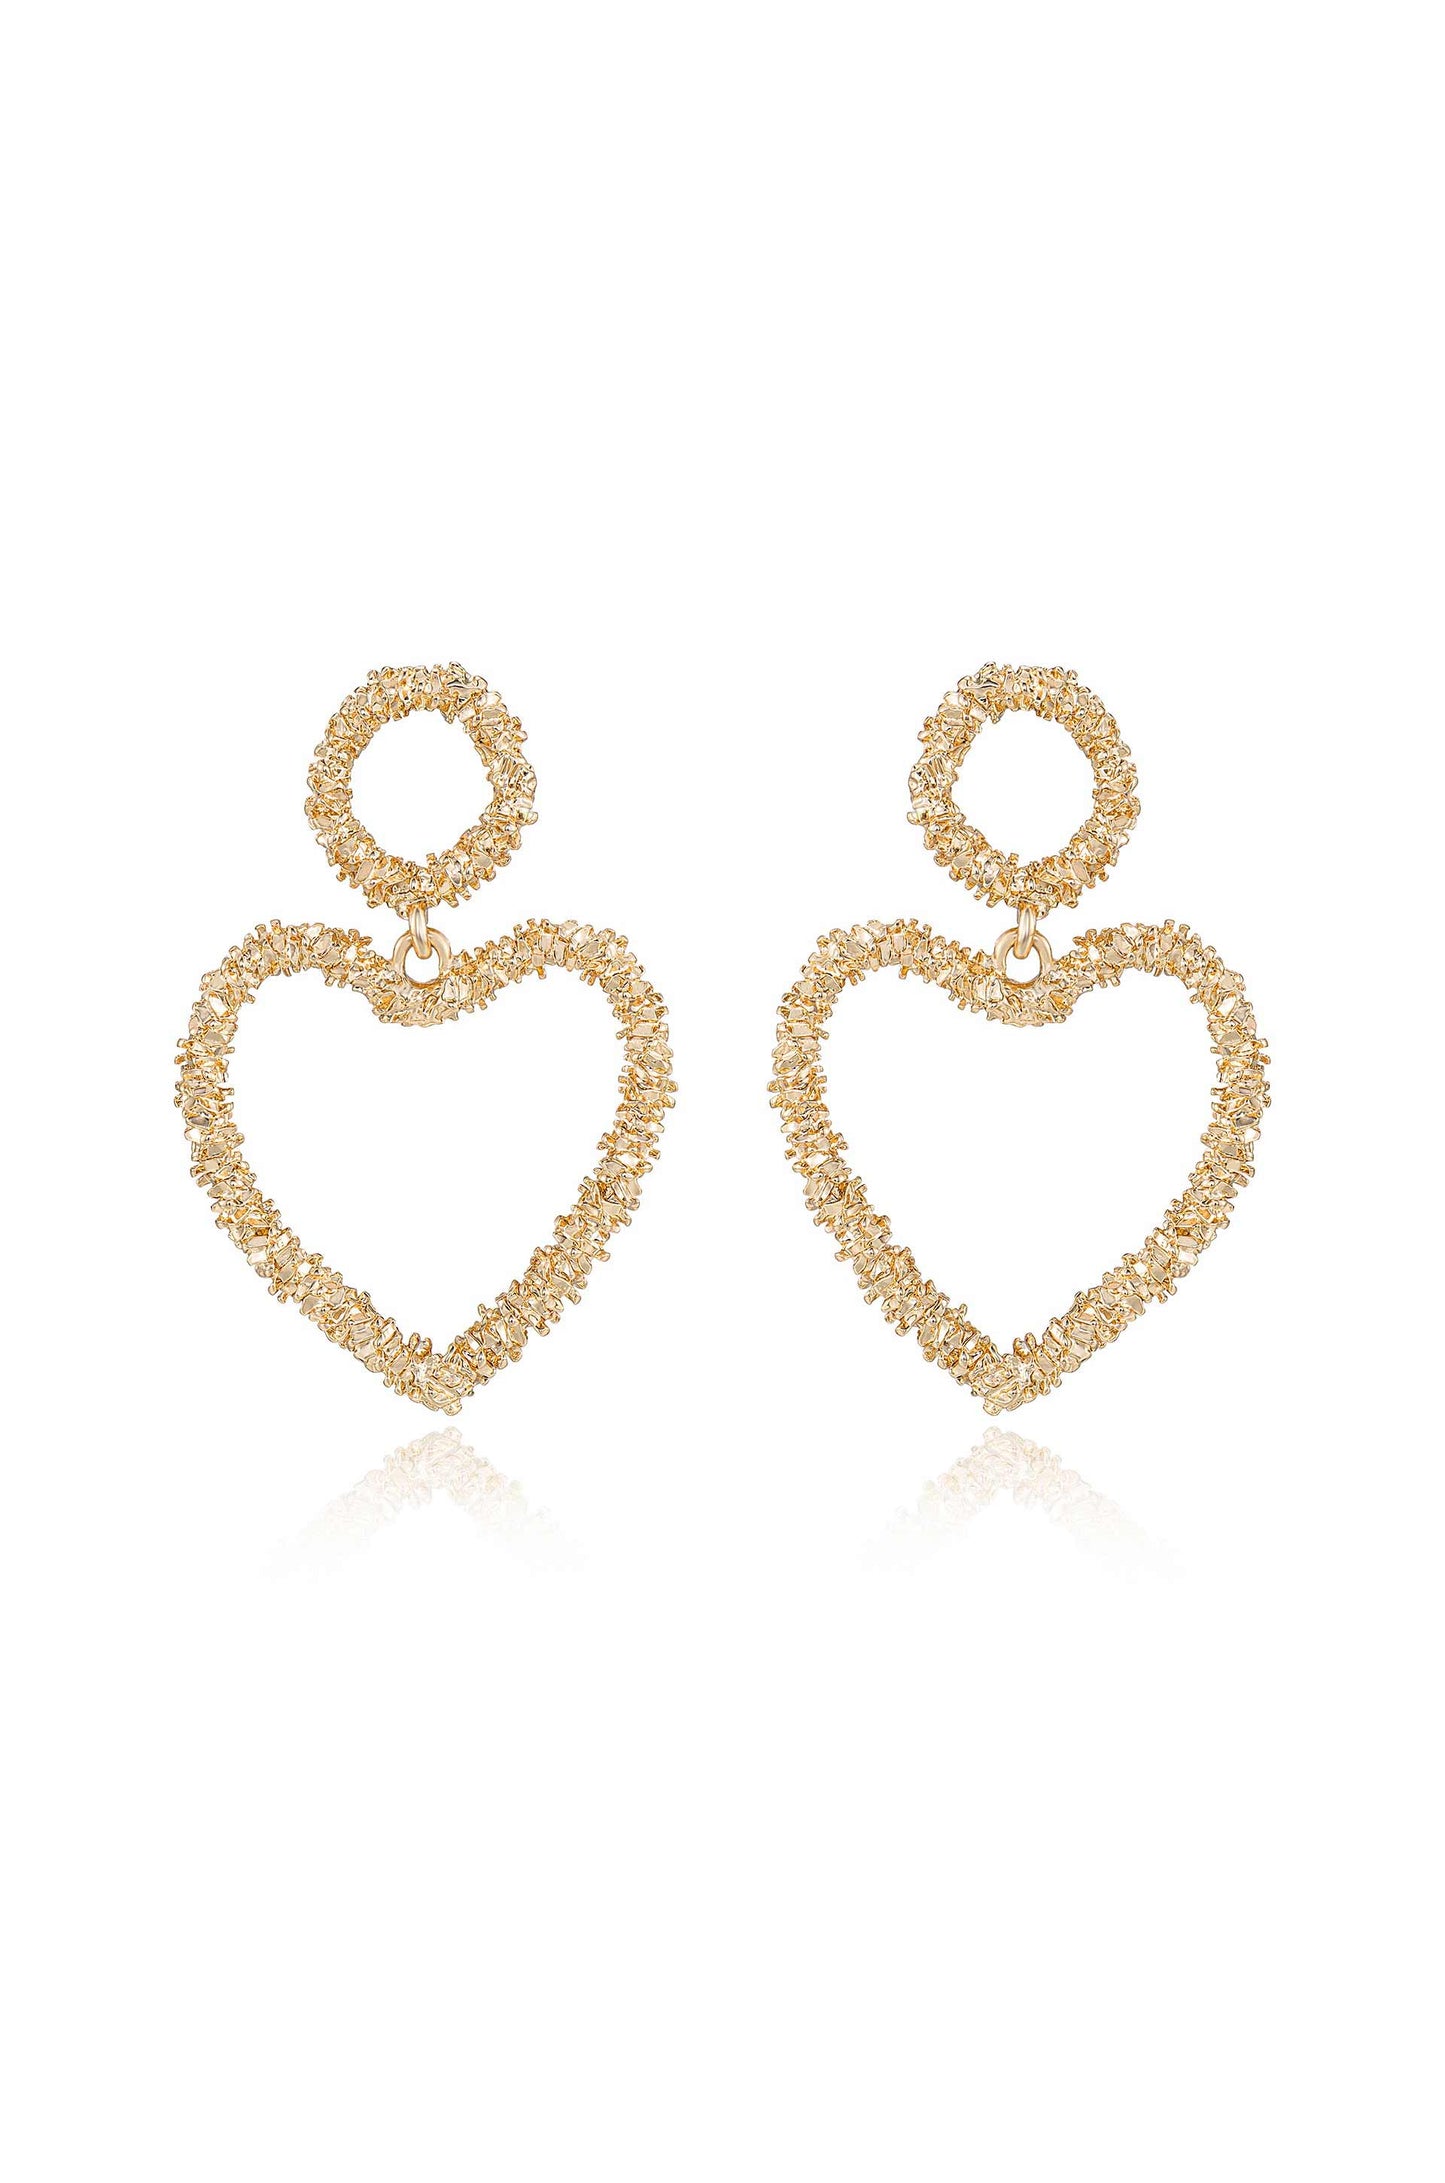 Last Love 18k Gold Plated Heart Earrings on white